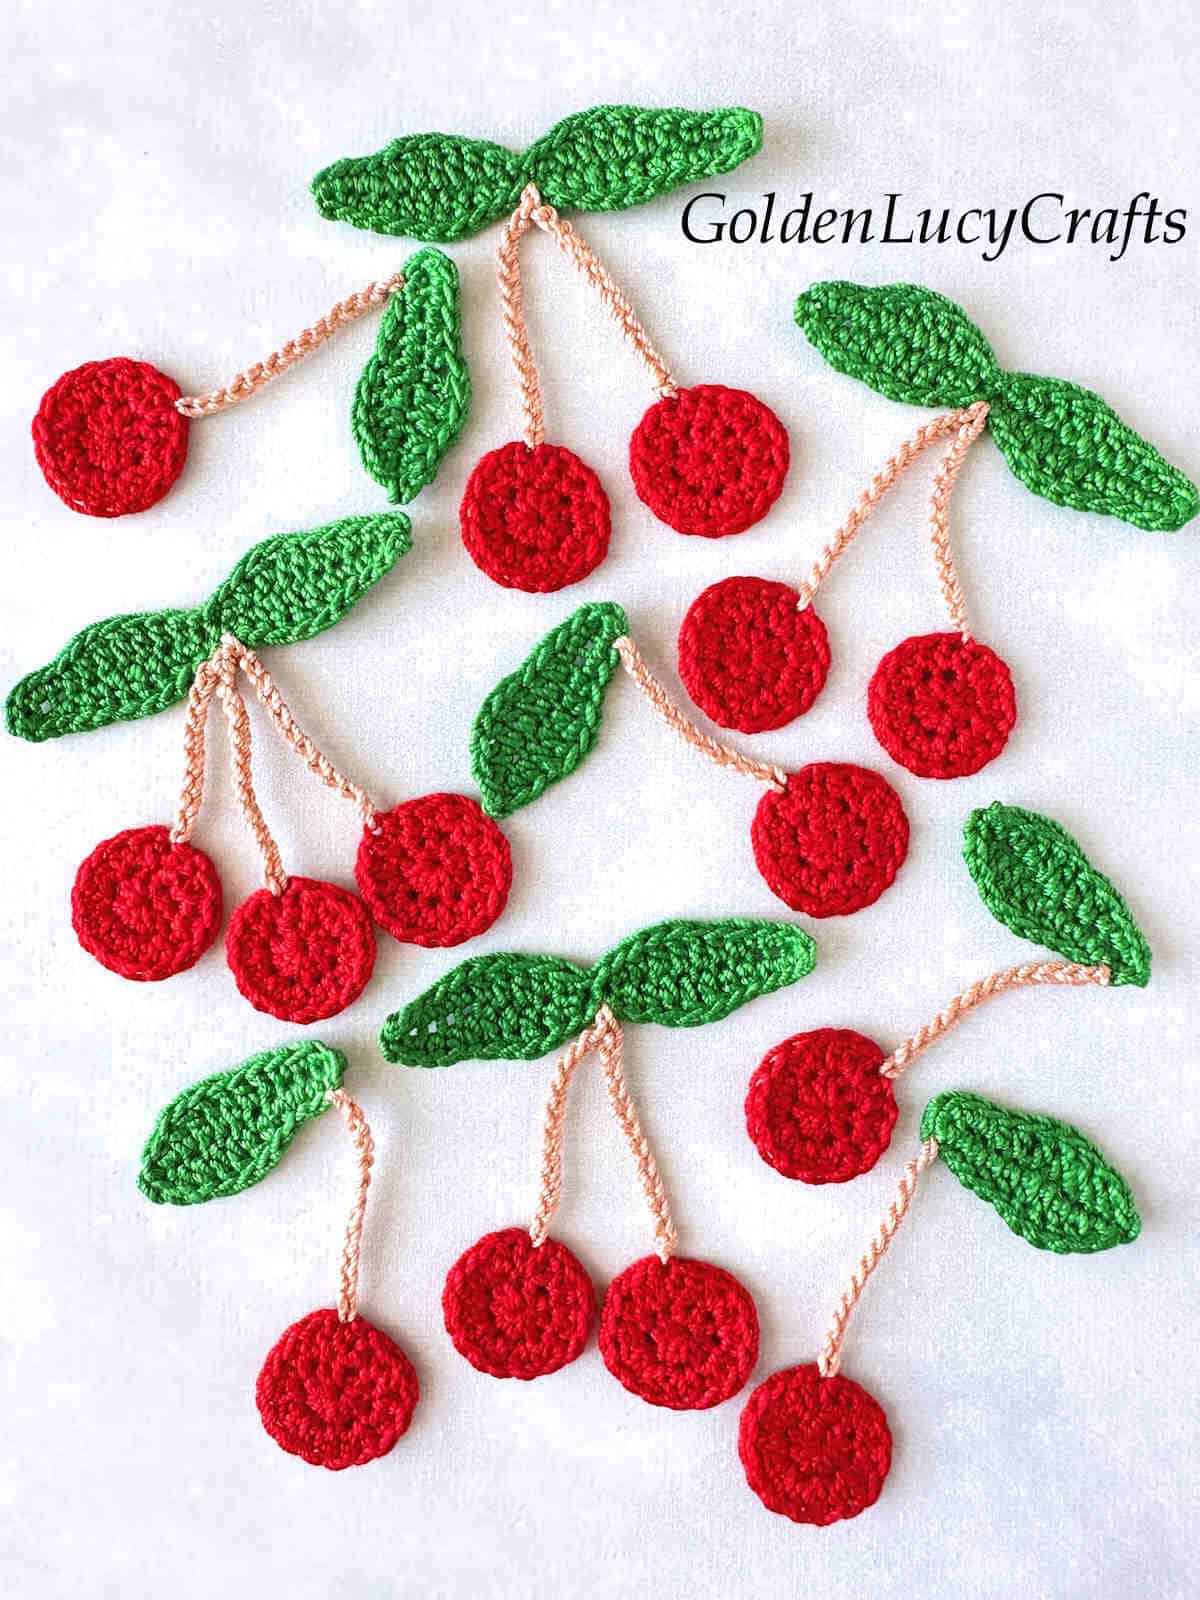 Crochet cherry appliques.